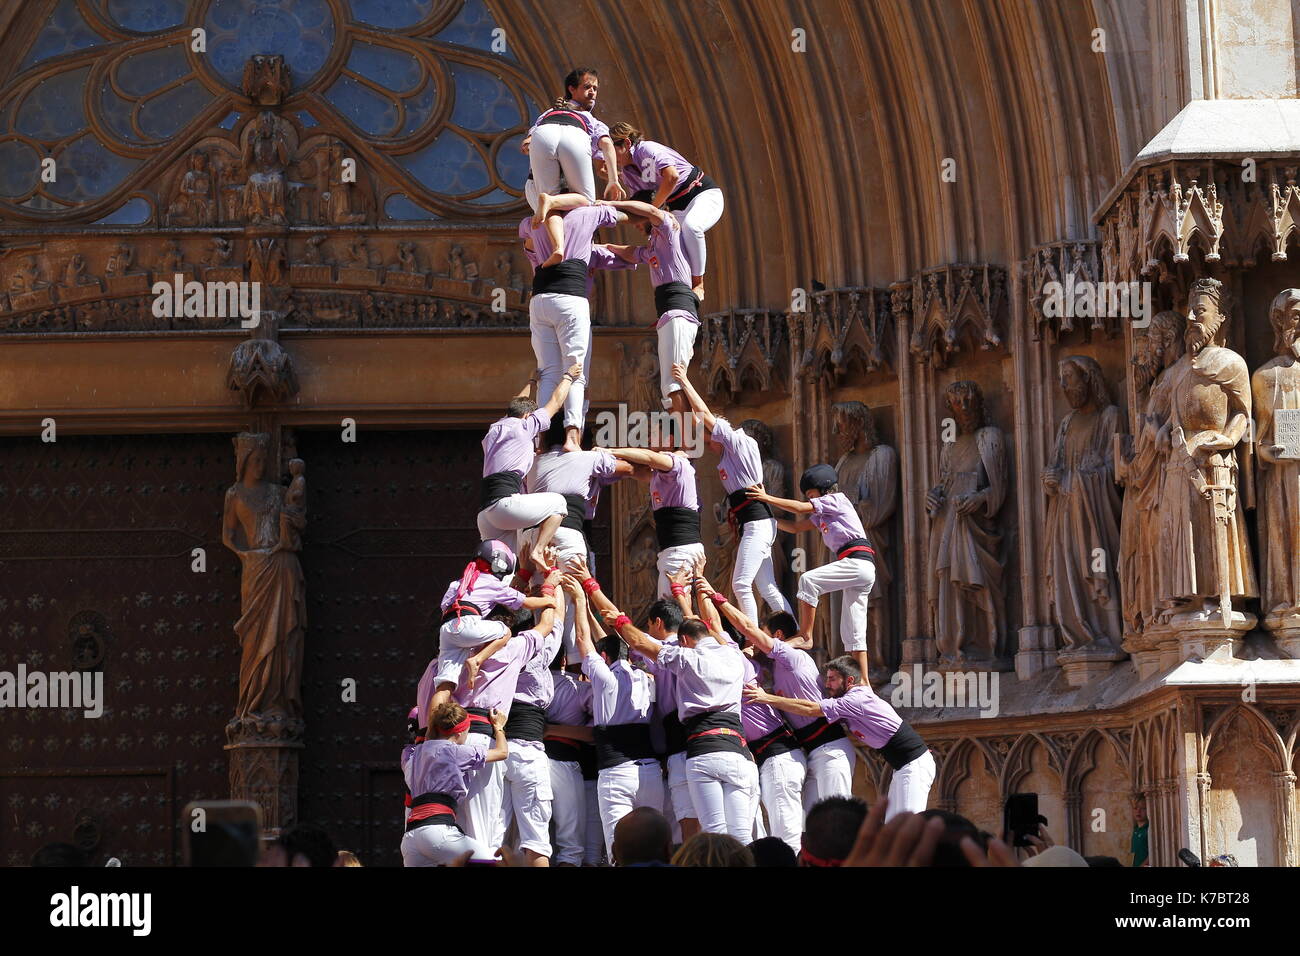 Les gens faire des droits de l'homme des tours en face de la cathédrale, un spectacle traditionnel en Catalogne appelé "castellers" Banque D'Images